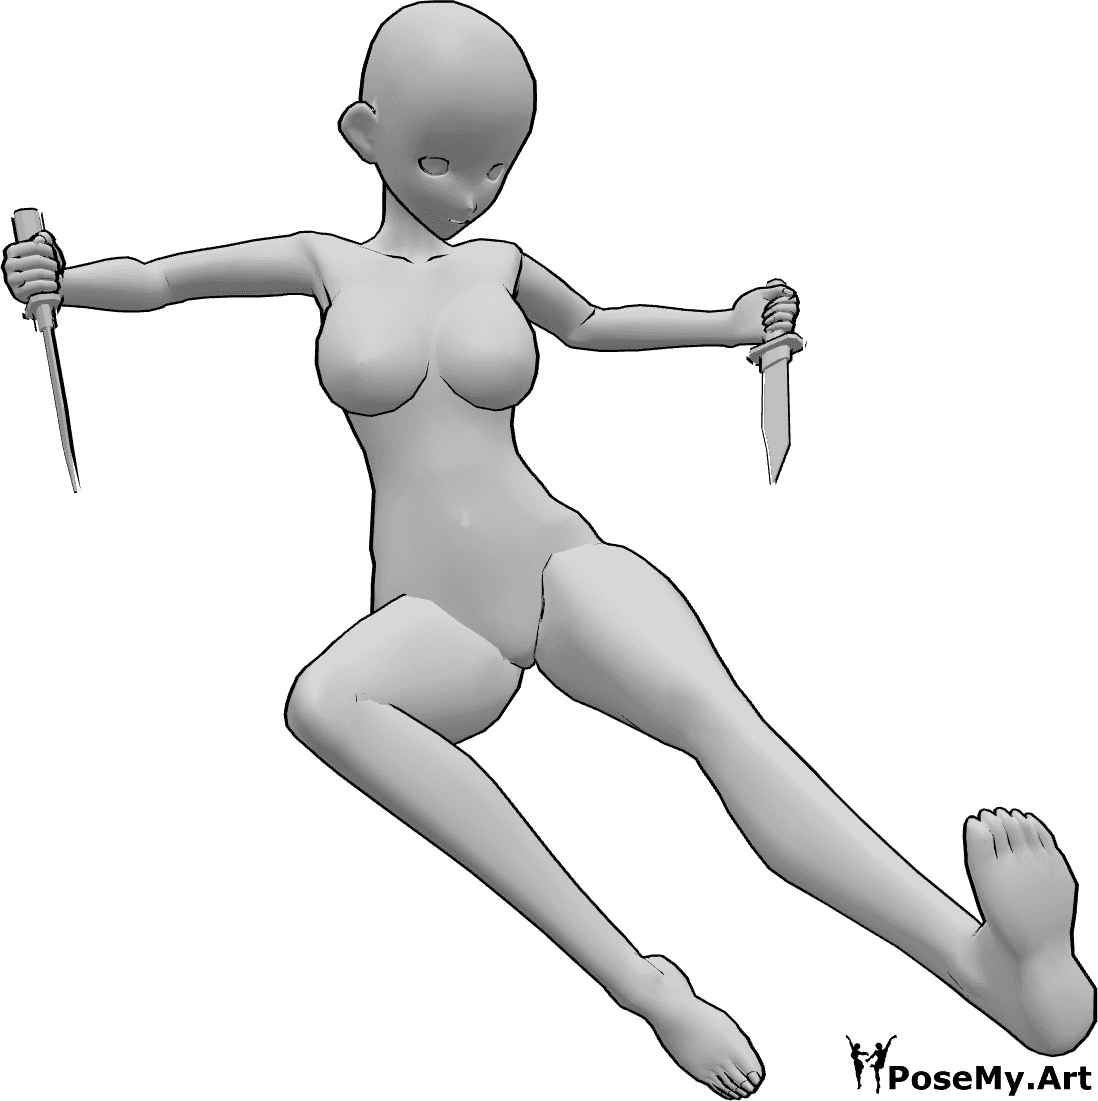 Referência de poses- Pose de faca de anime com pontapé - Mulher anime salta e dá pontapés enquanto segura facas com as duas mãos